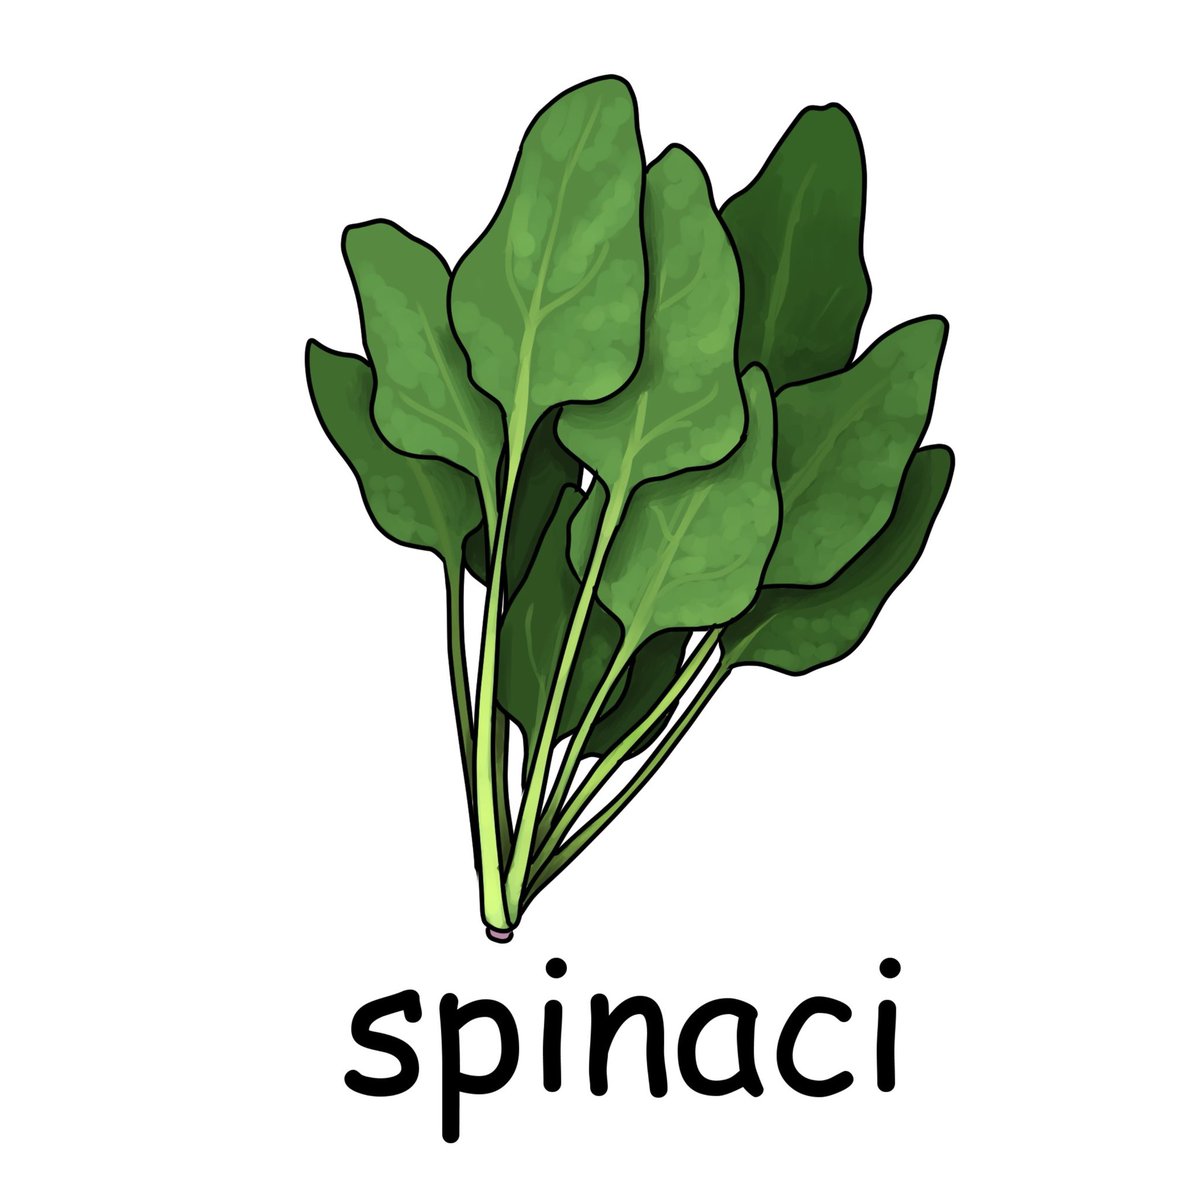 毎日イラストイタリア語 Twitterren ほうれん草 Spinaci スピナーチ Spinaciは複数形で 葉一枚 単数 だとspinacioとなります ほうれん草を食べて強くなるポパイですが イタリア語版での彼の名前はbraccio Di Ferro 鉄の腕 と言います イラスト イタリア語